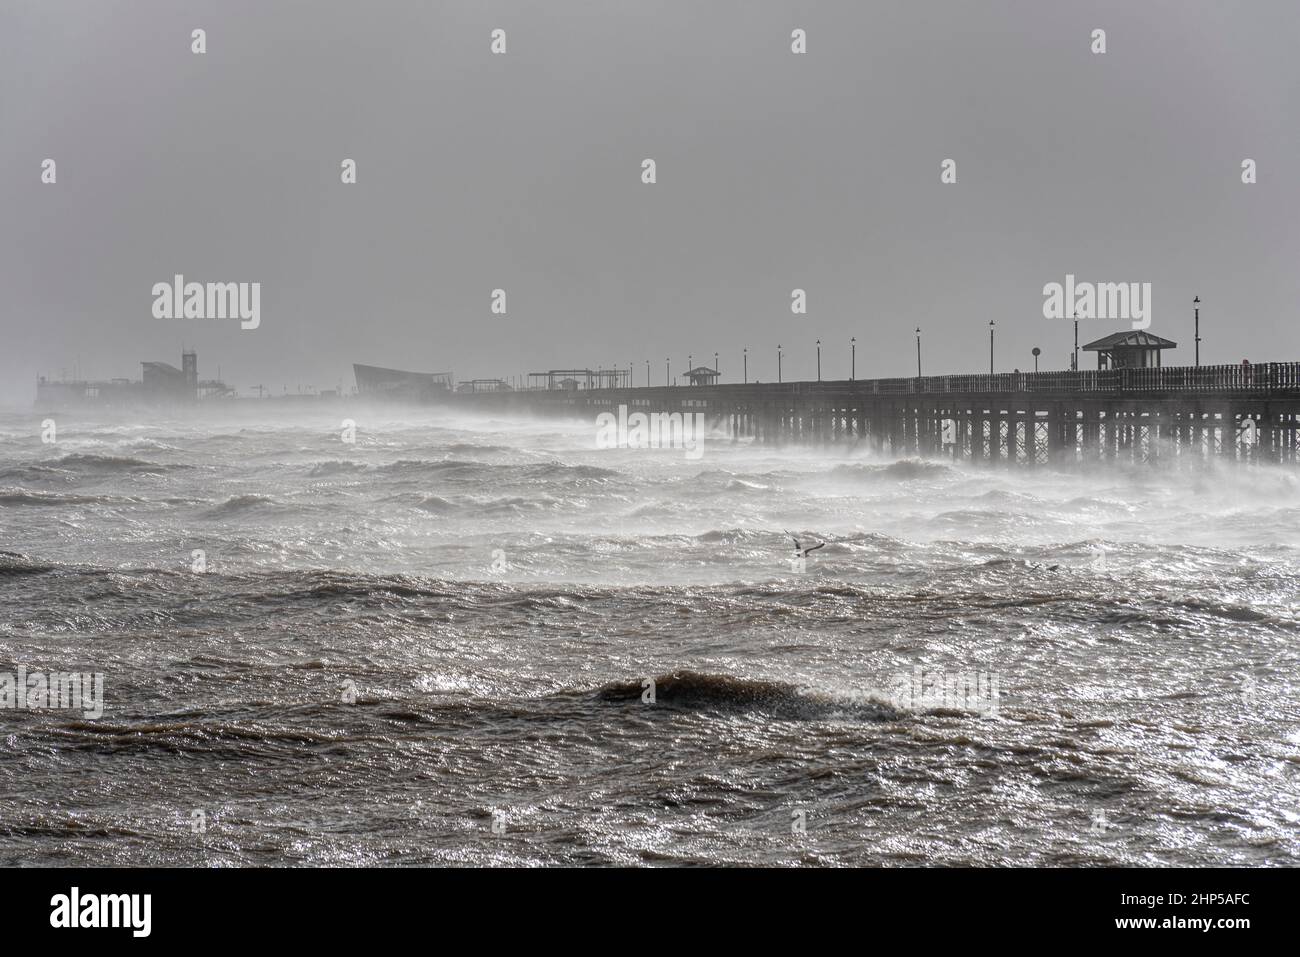 Southend Pier während der starken Winde des Sturms Eunice in Southend on Sea, Essex, Großbritannien. Flussmündung Der Themse. Raue See. Extremes Wetter. Hohe Wellen und Spray Stockfoto